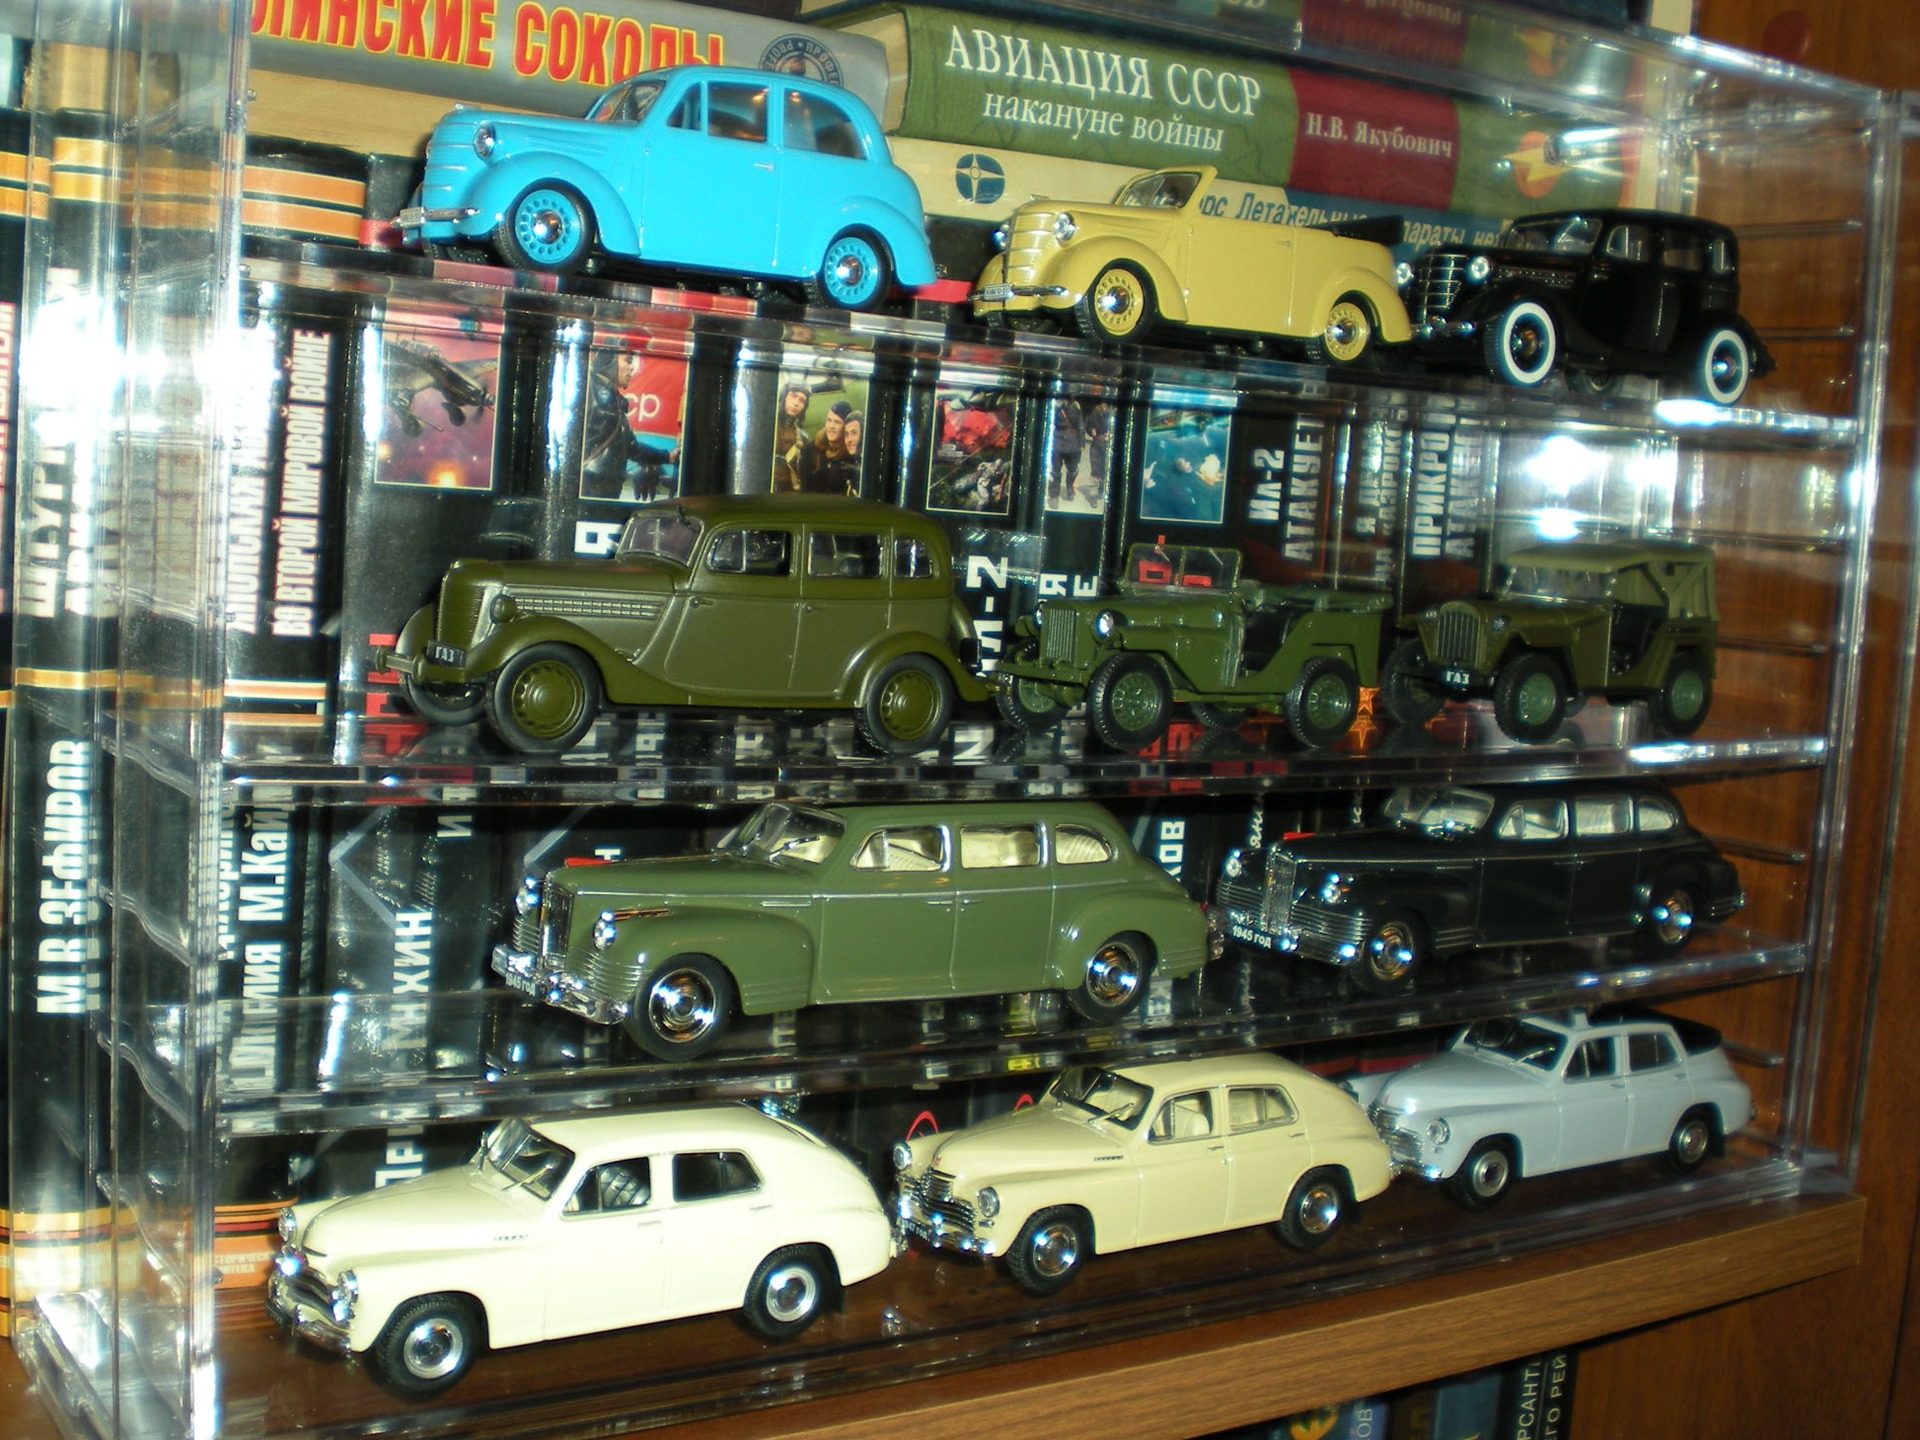 1 43 collection. Коллекция моделей автомобилей. Коллекционирование моделей автомобилей. Коллекция моделей 1 43. Автомобилей модели частные коллекции.